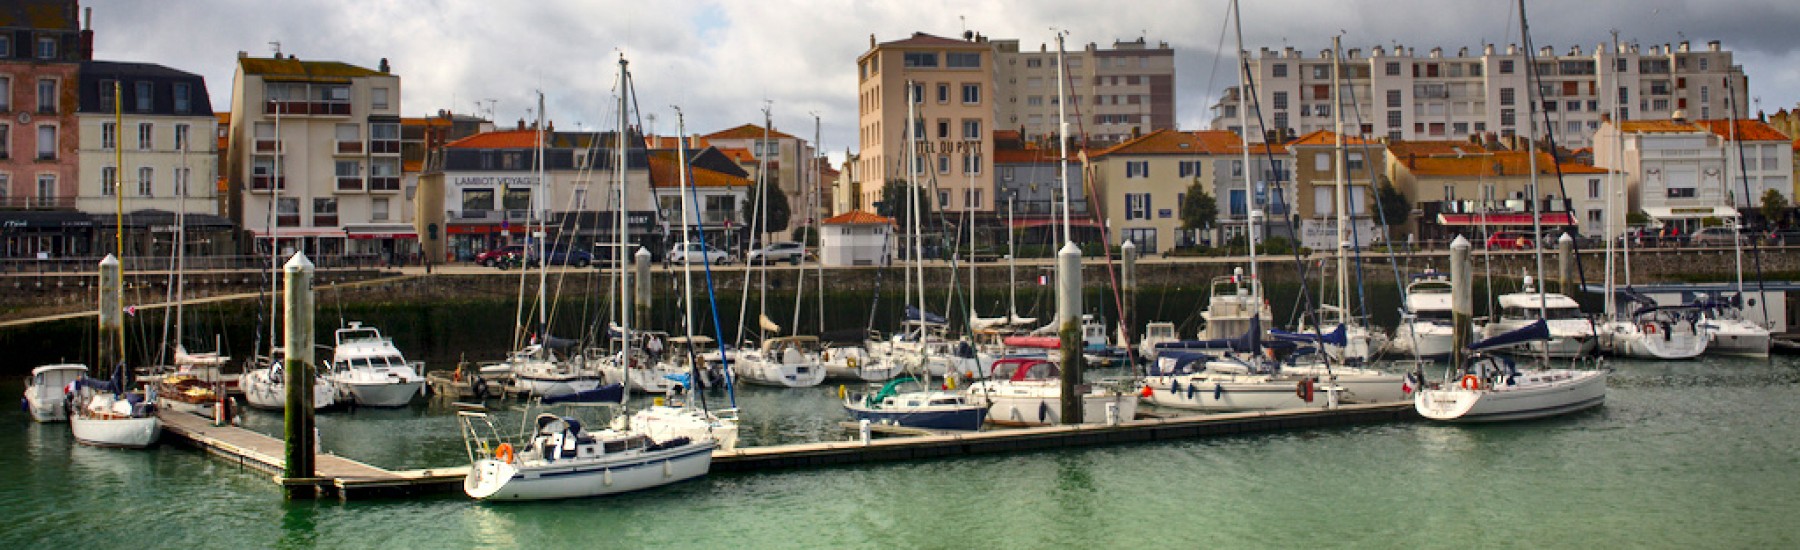 Port quai garnier - plaisance Sables d'Olonne